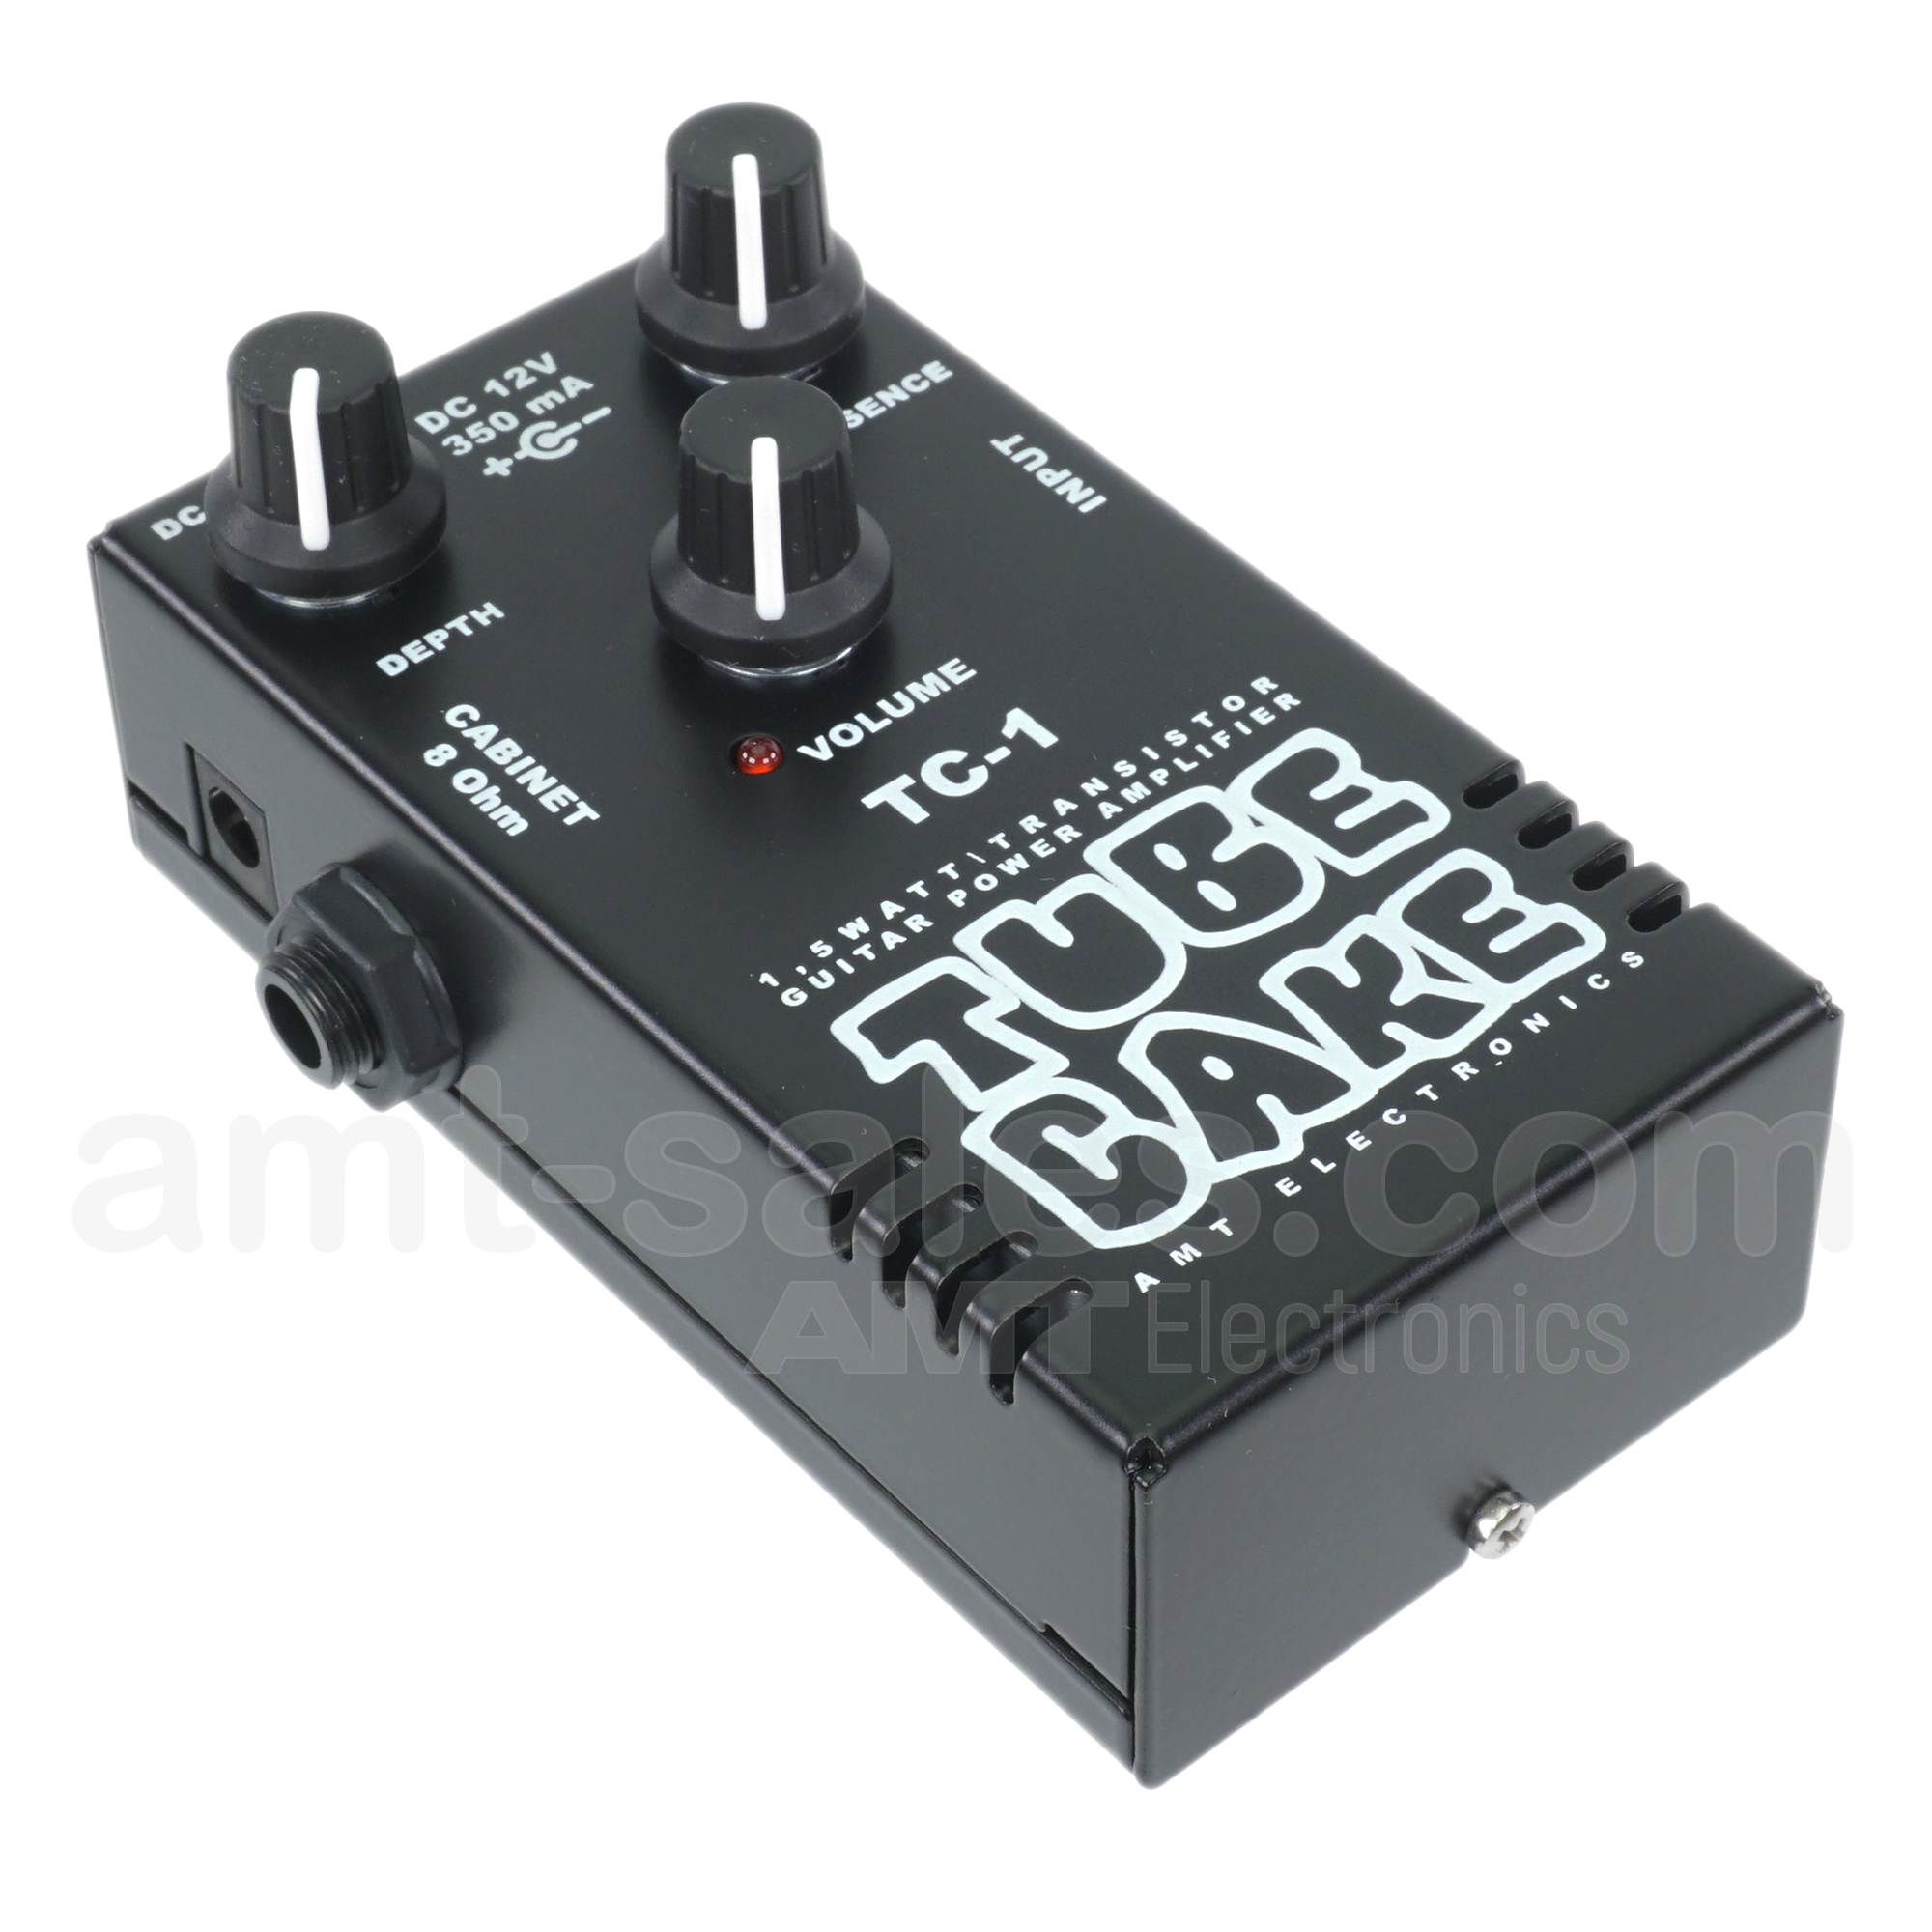 AMT Tubecake 1,5W - 1.5W Power Amplifier (100% analog)